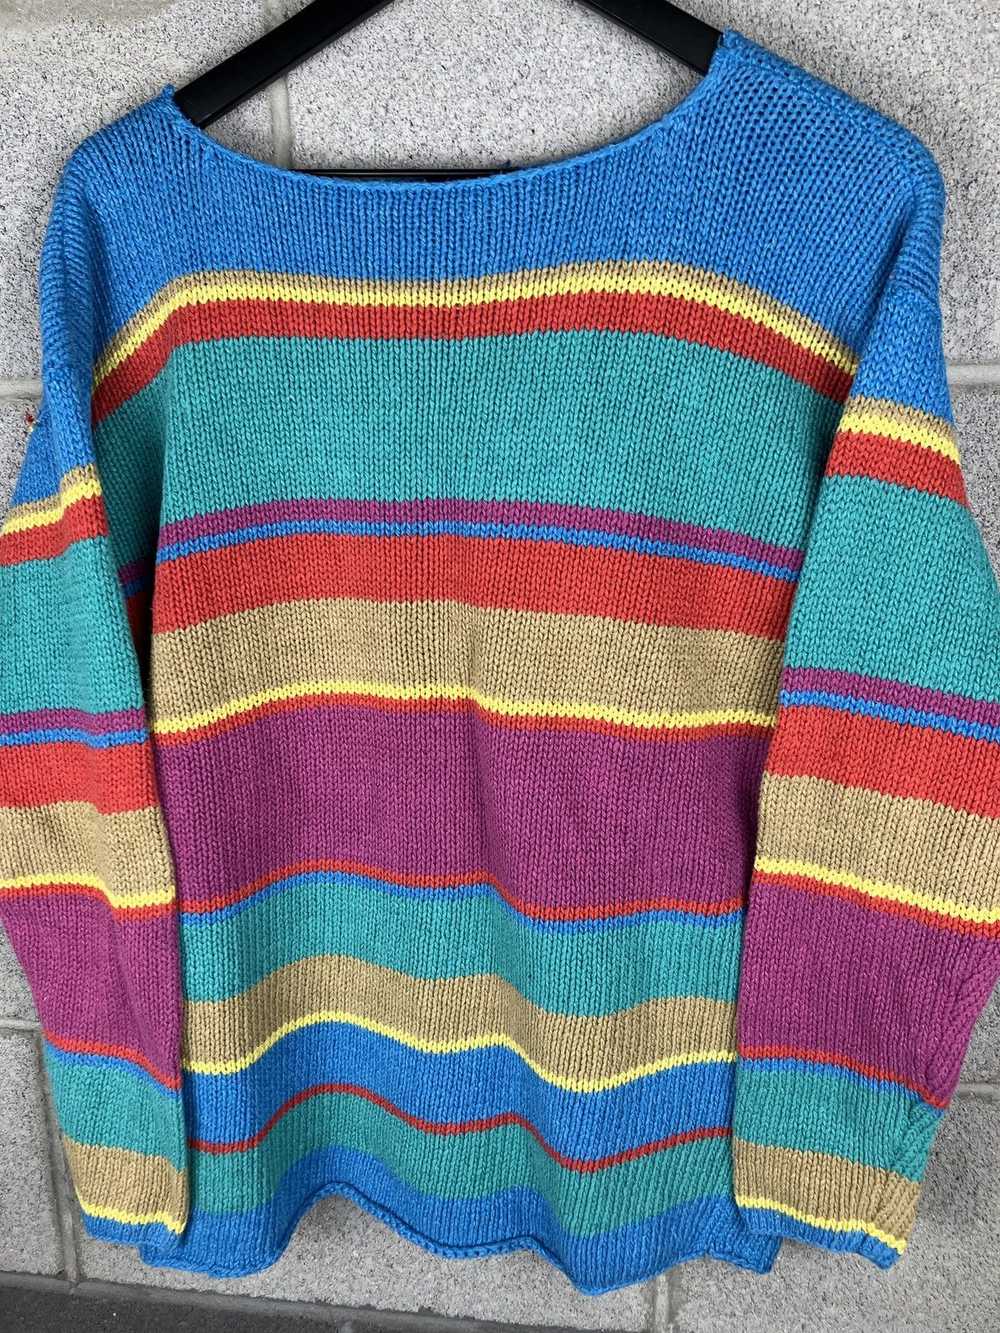 Coloured Cable Knit Sweater × Ralph Lauren × Vint… - image 2